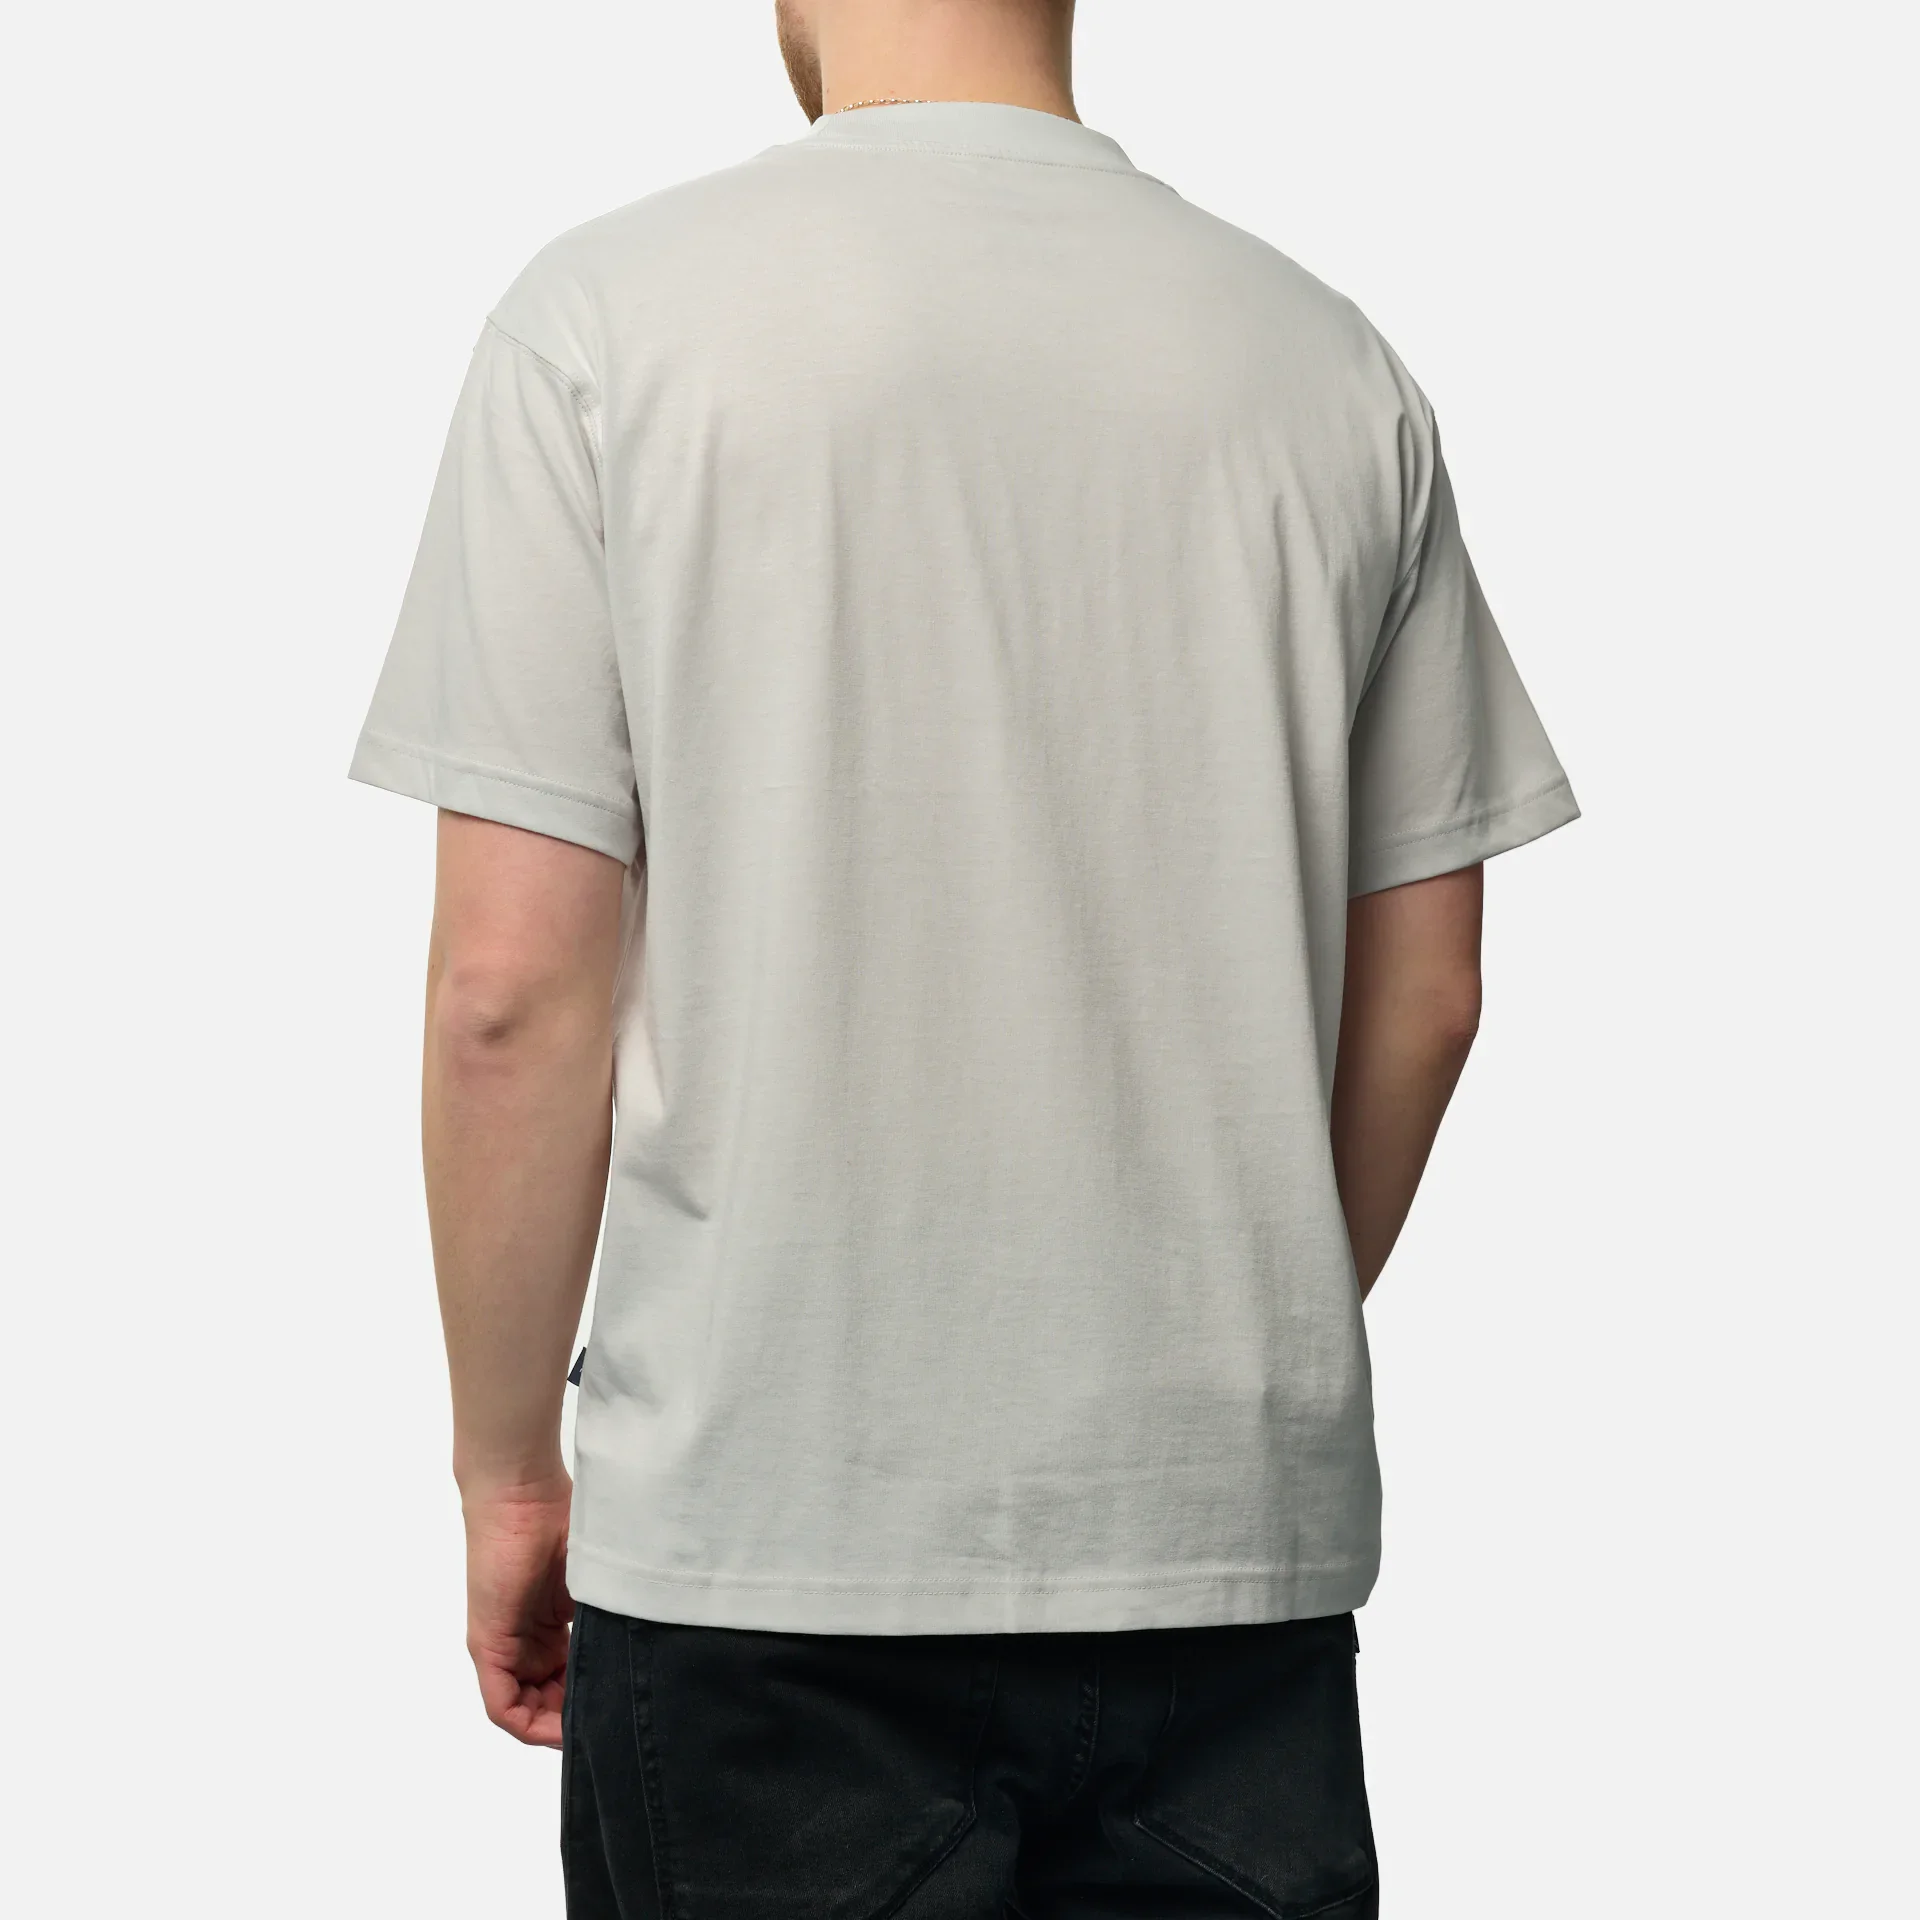 New Balance Relaxed Linear T-Shirt Grey Matt